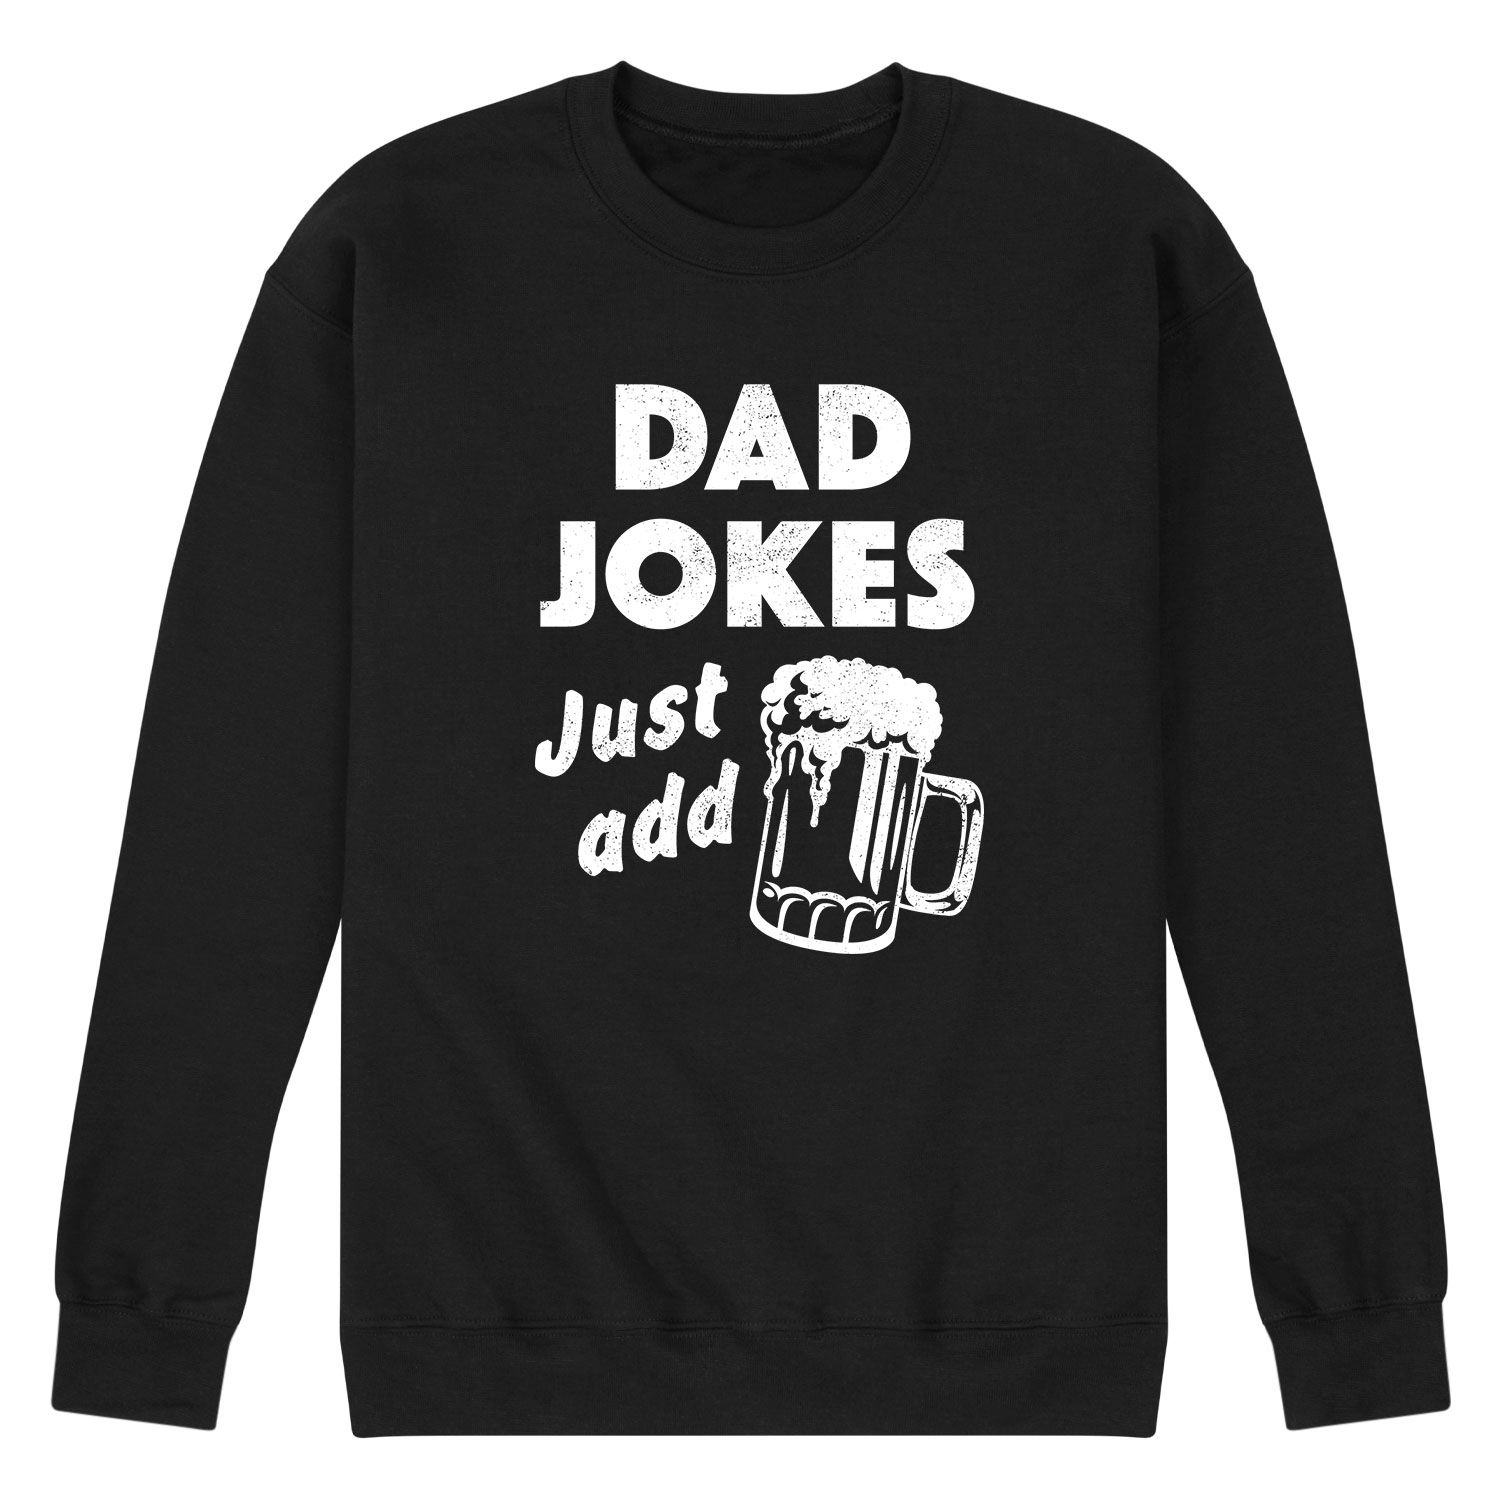 Мужская толстовка с папиными шутками «Просто добавь пиво» Licensed Character мужская футболка просто добавь кофе m темно синий